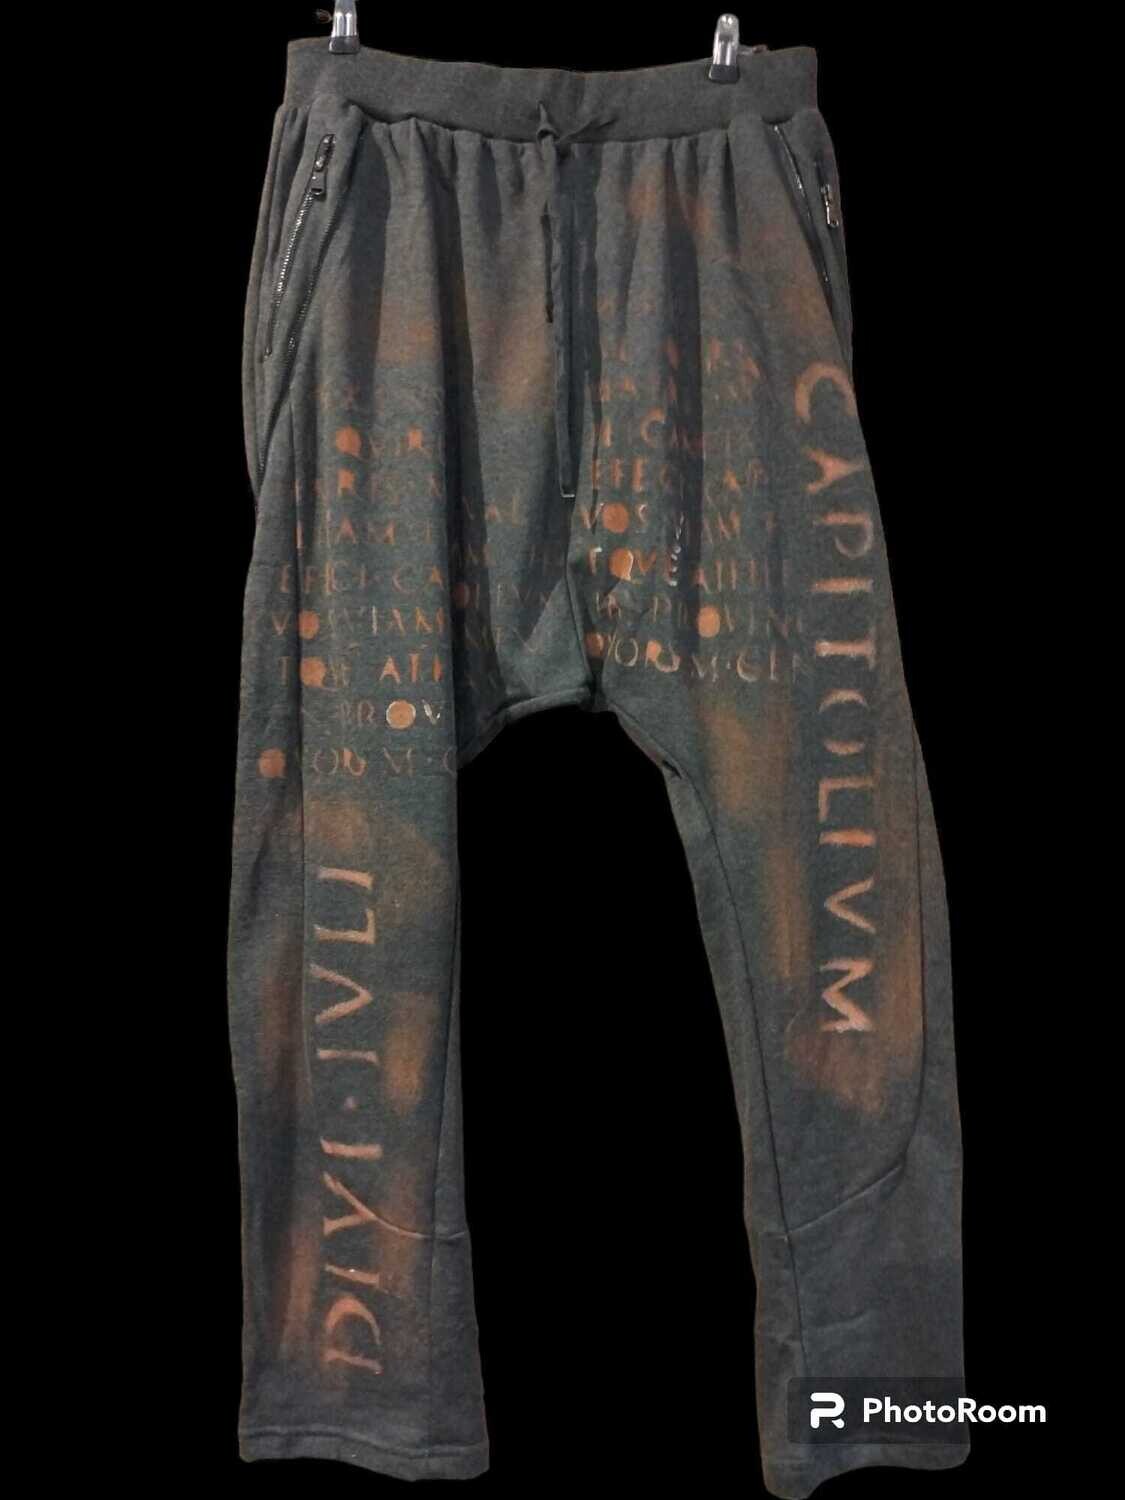 Pantalón chandal, talla XXL, gris, cremalleras bolsillos, letras.